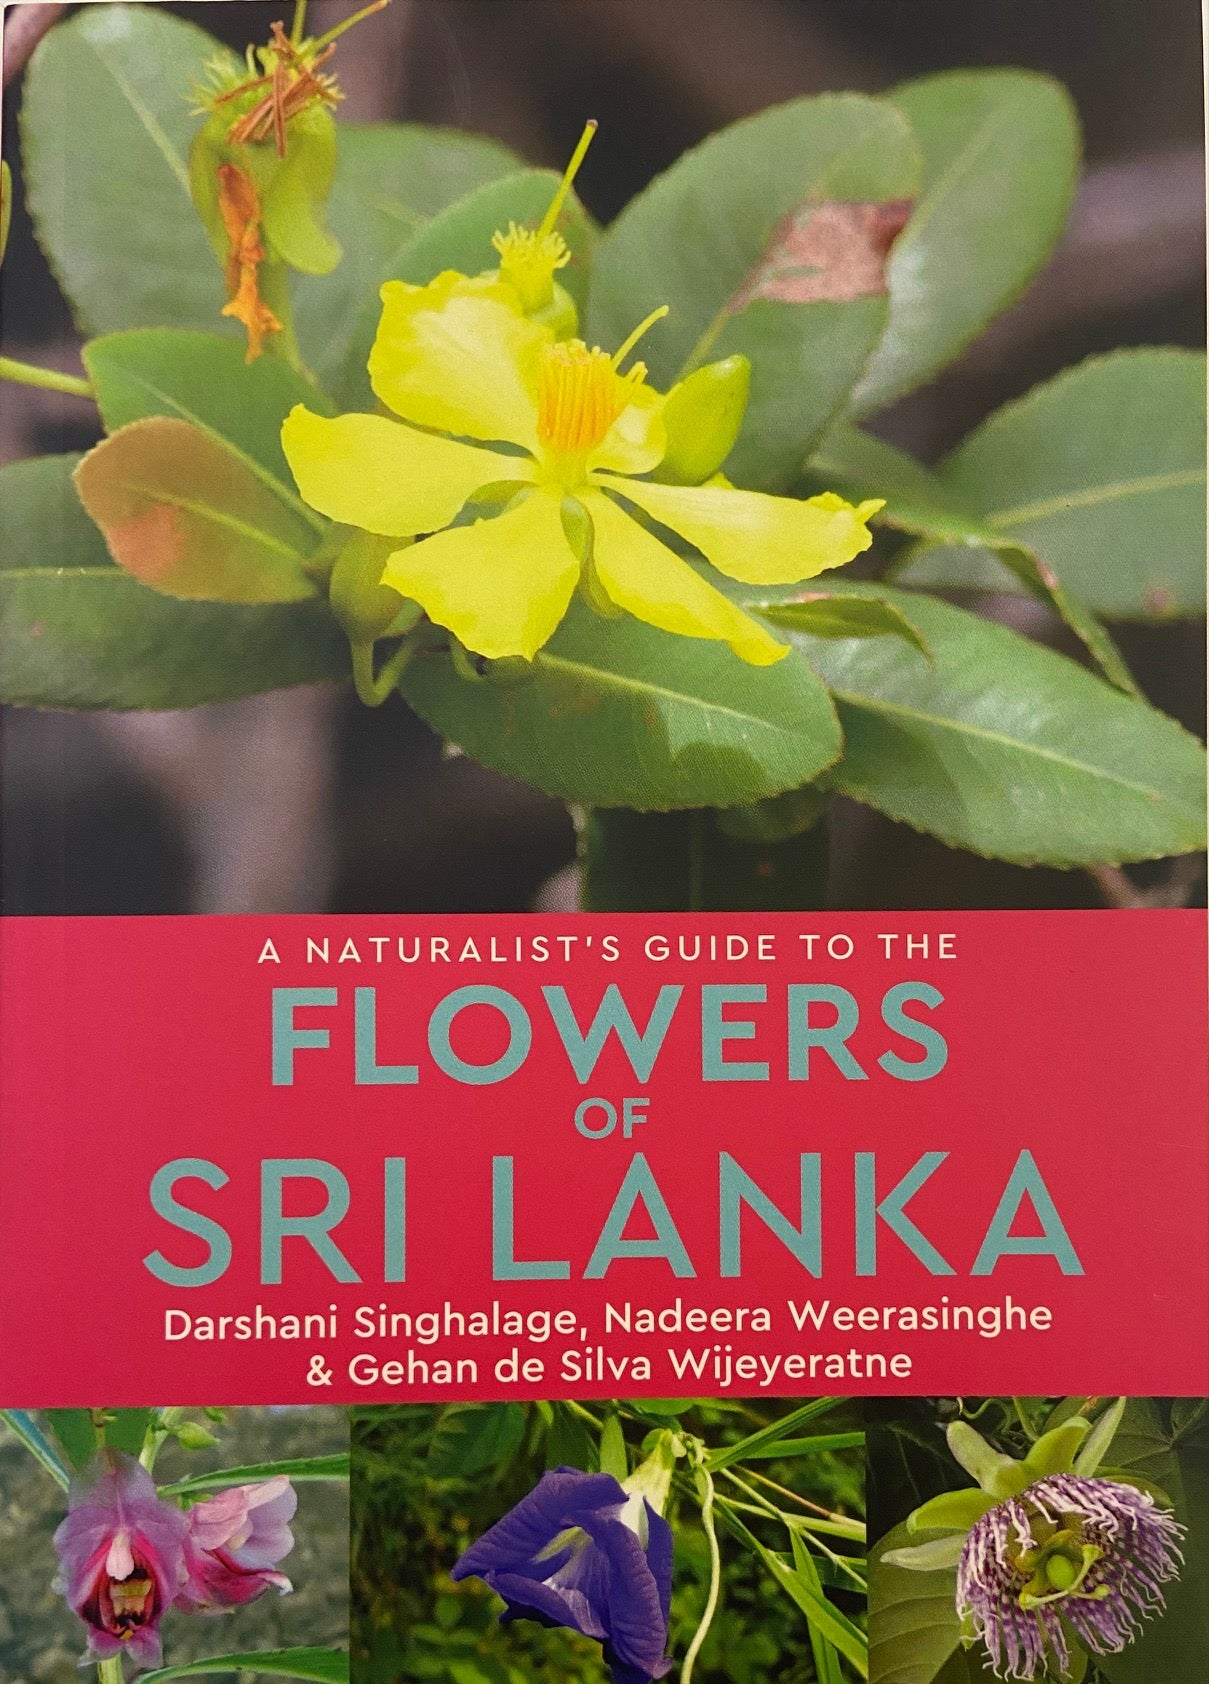 A Naturalist’s Guide to the Flowers of Sri Lanka by Darshani Sinhalage, Nadeera Weerasinghe & Gehan de Silva Wijeratne